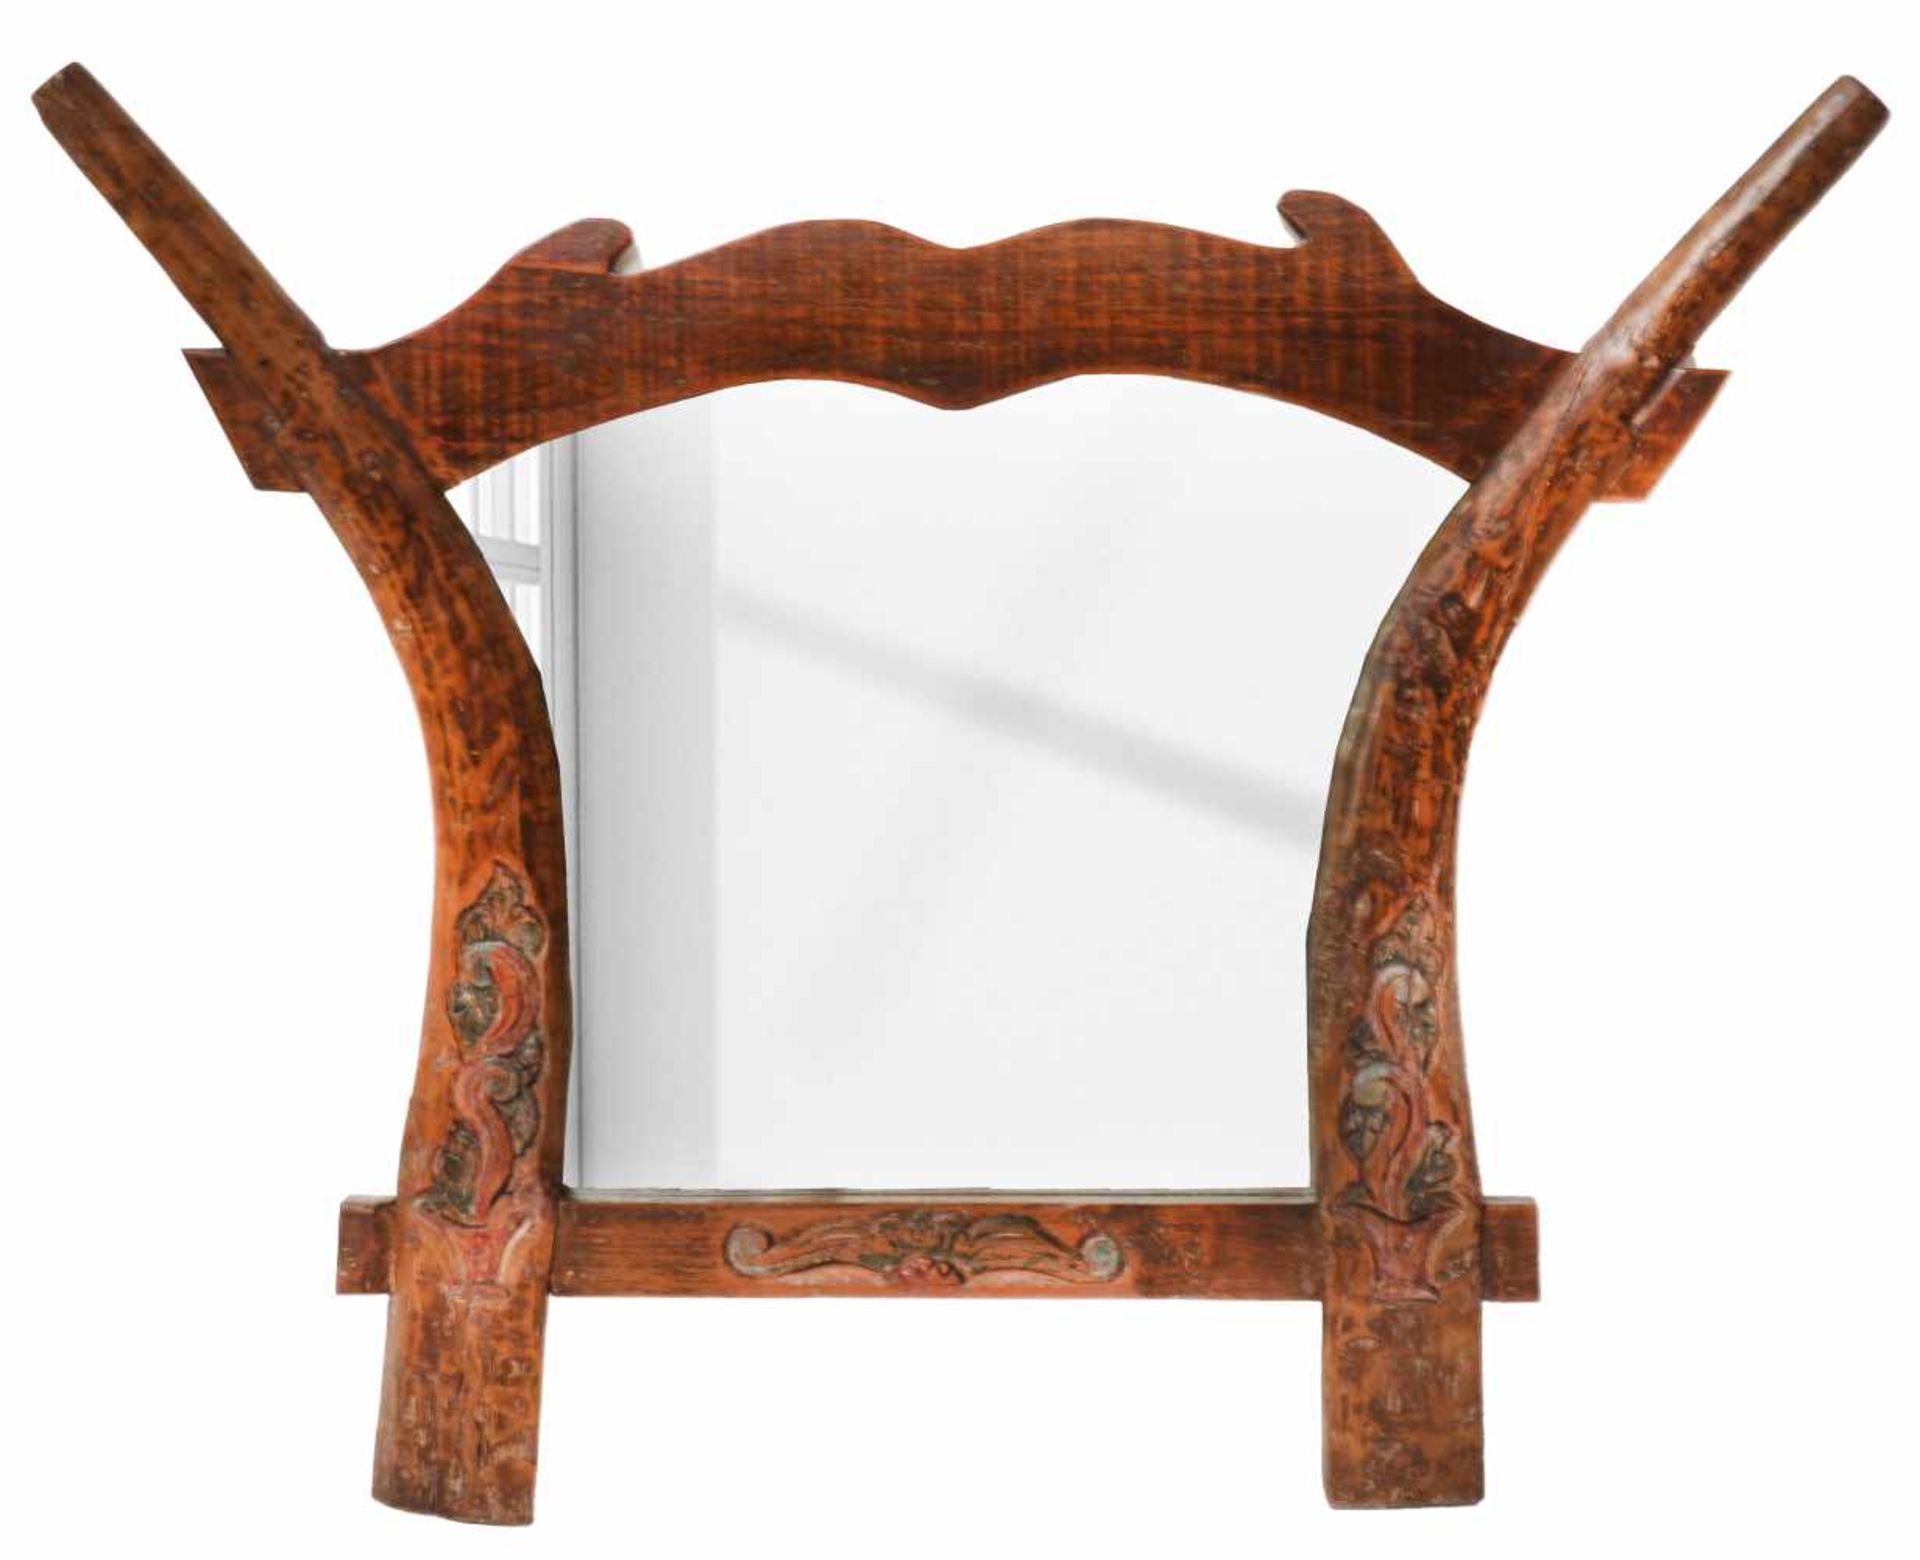 Een wandspiegel vervaardigd van een Indonesische ploeg.Afm. 96 x 77 cm.A wall mirror made from an